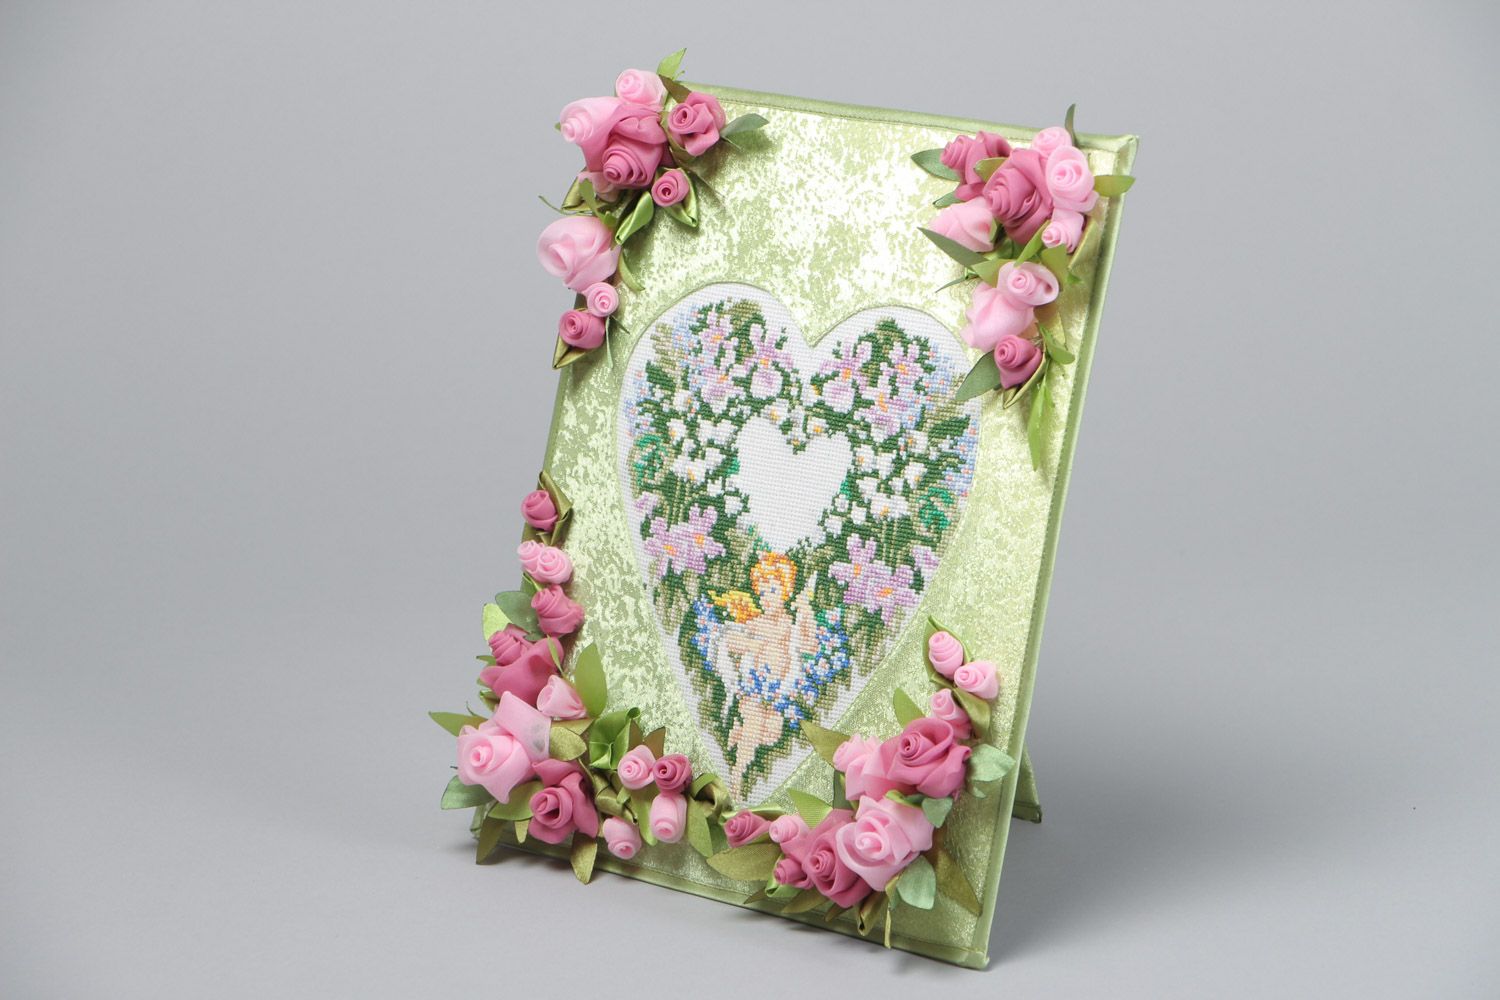 Панно ручной работы с вышивкой необычное с цветами нарядное красивое на стену фото 2